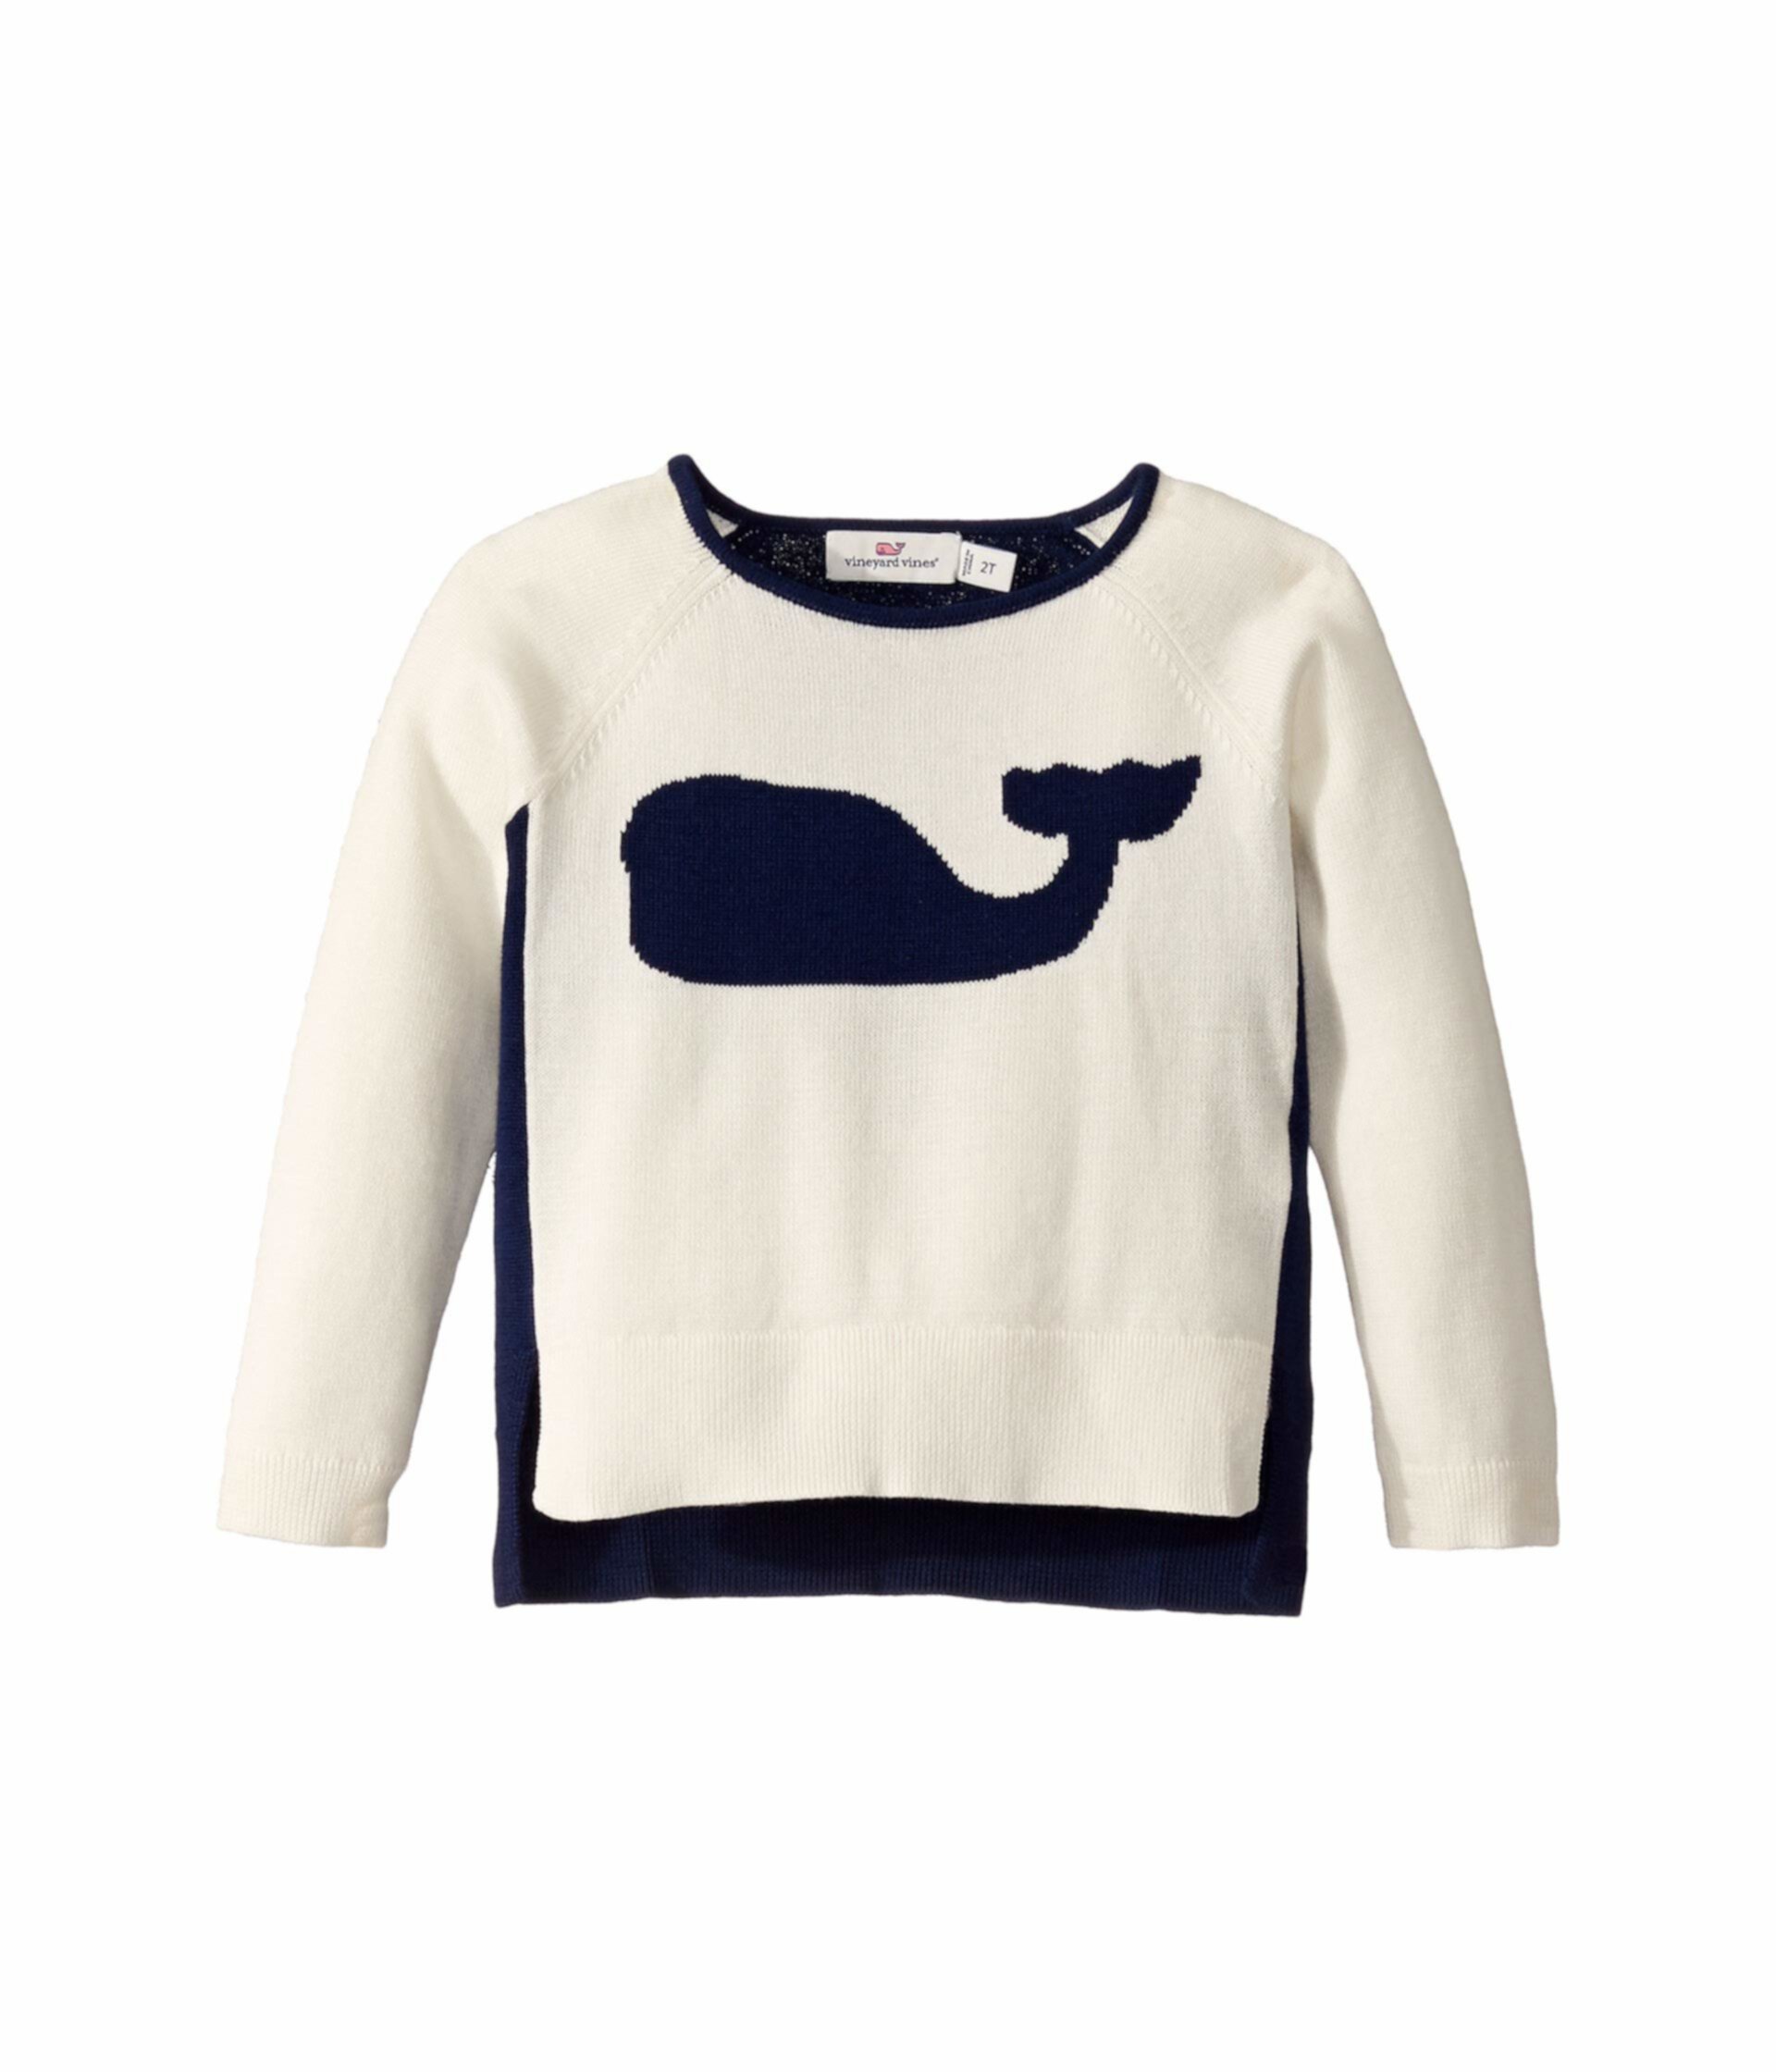 Свитер интарсия с китами Relaxed (для малышей / маленьких детей / больших детей) Vineyard Vines Kids